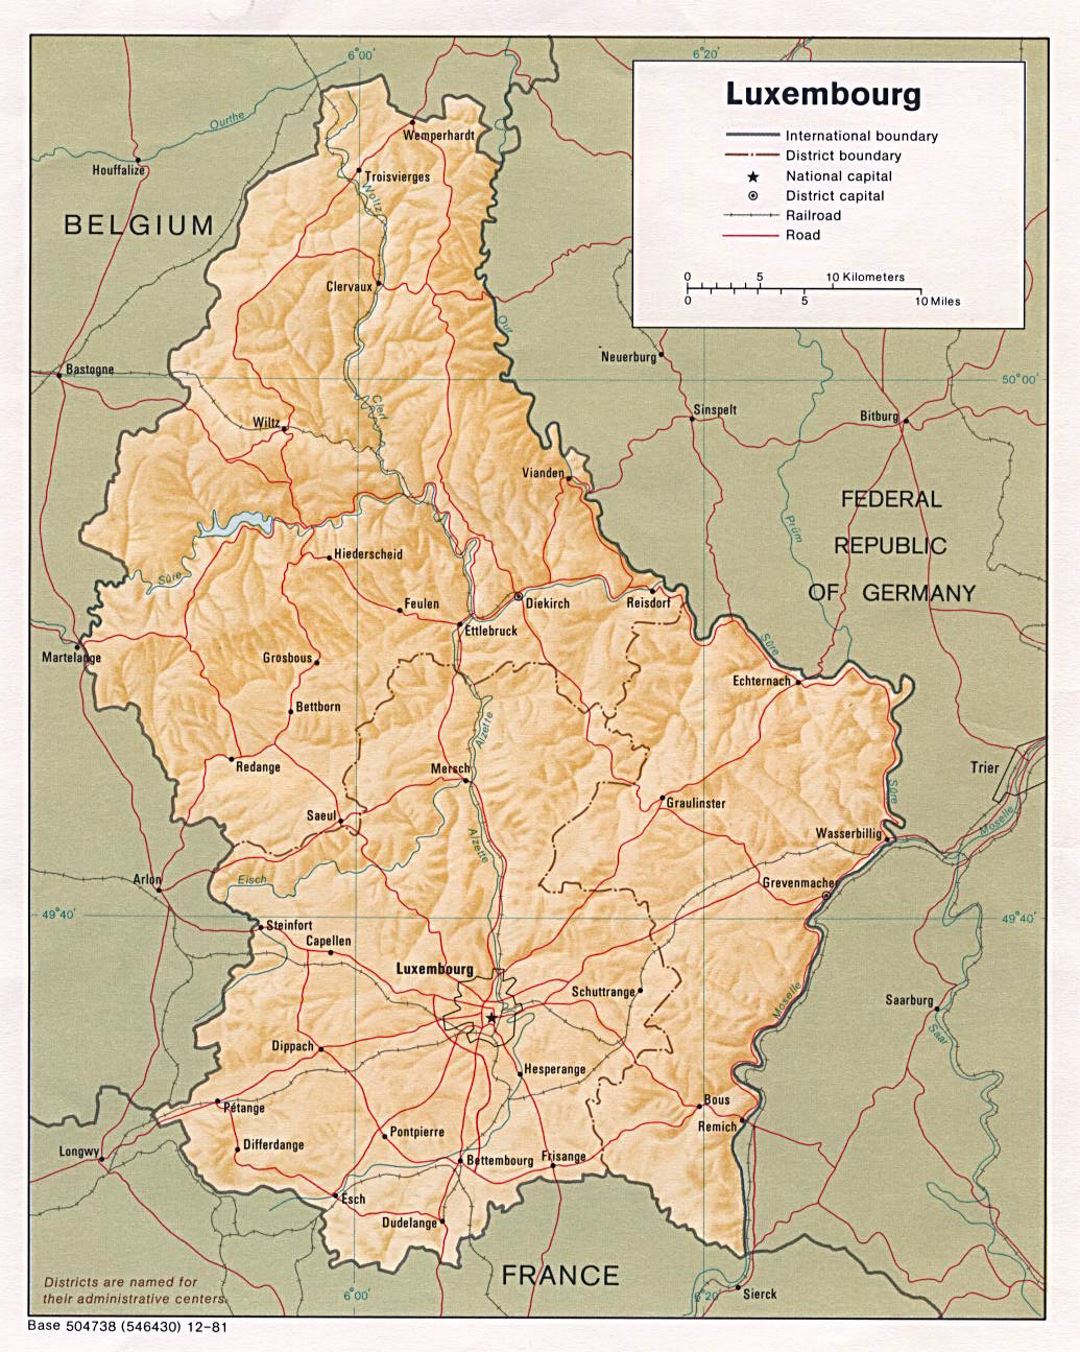 Детальная политическая и административная карта Люксембурга с рельефом, дорогами, железными дорогами и крупными городами - 1981